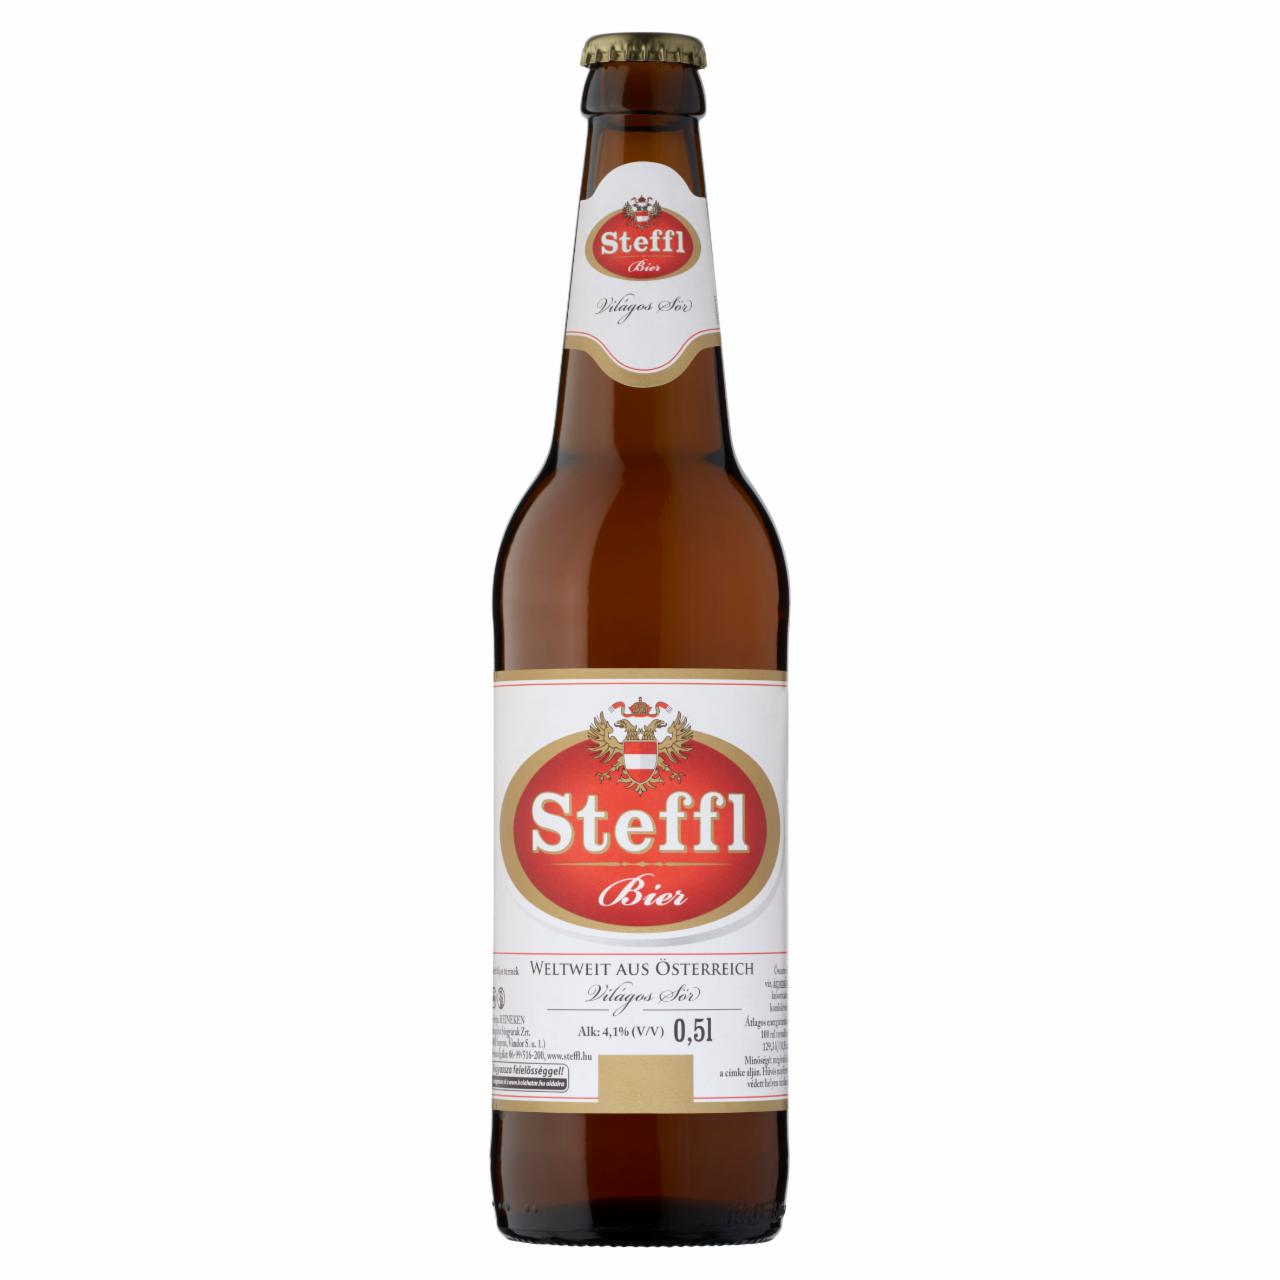 Képek - Steffl világos sör 4,1% 0,5 l üveg